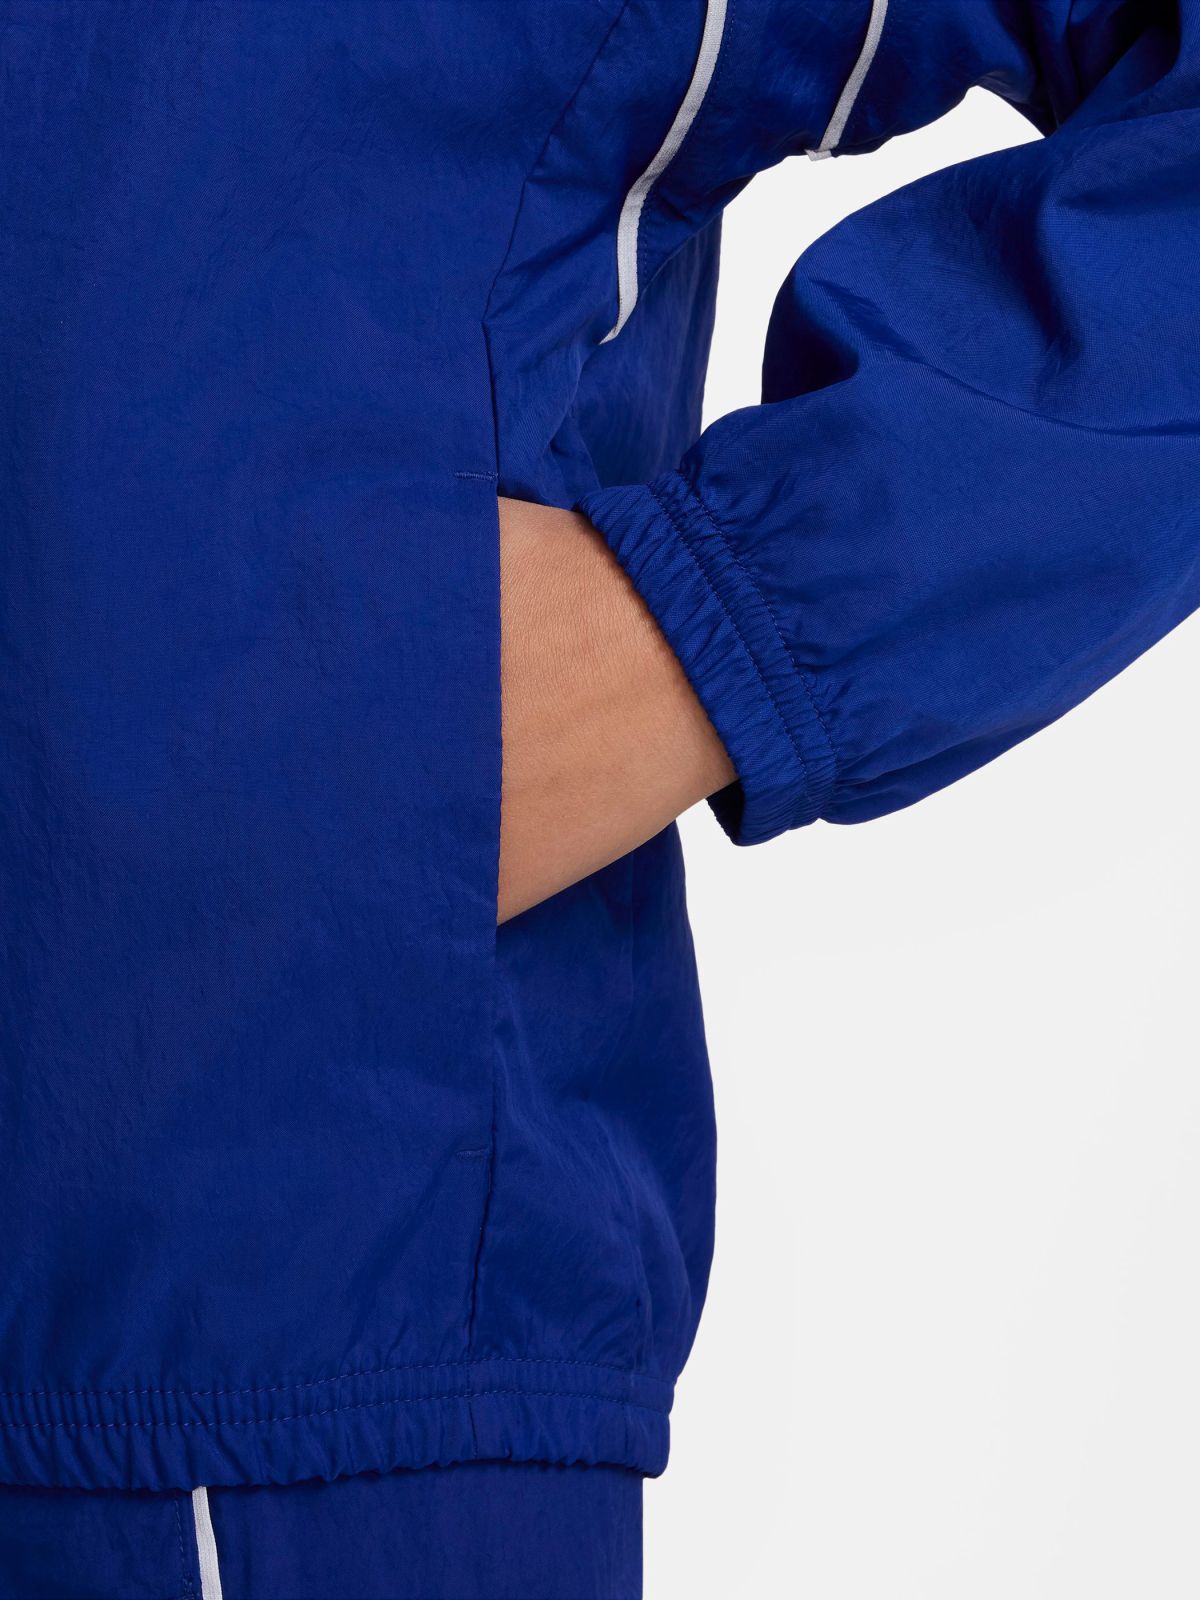  חליפת טראק ניילון עם לוגו של NIKE